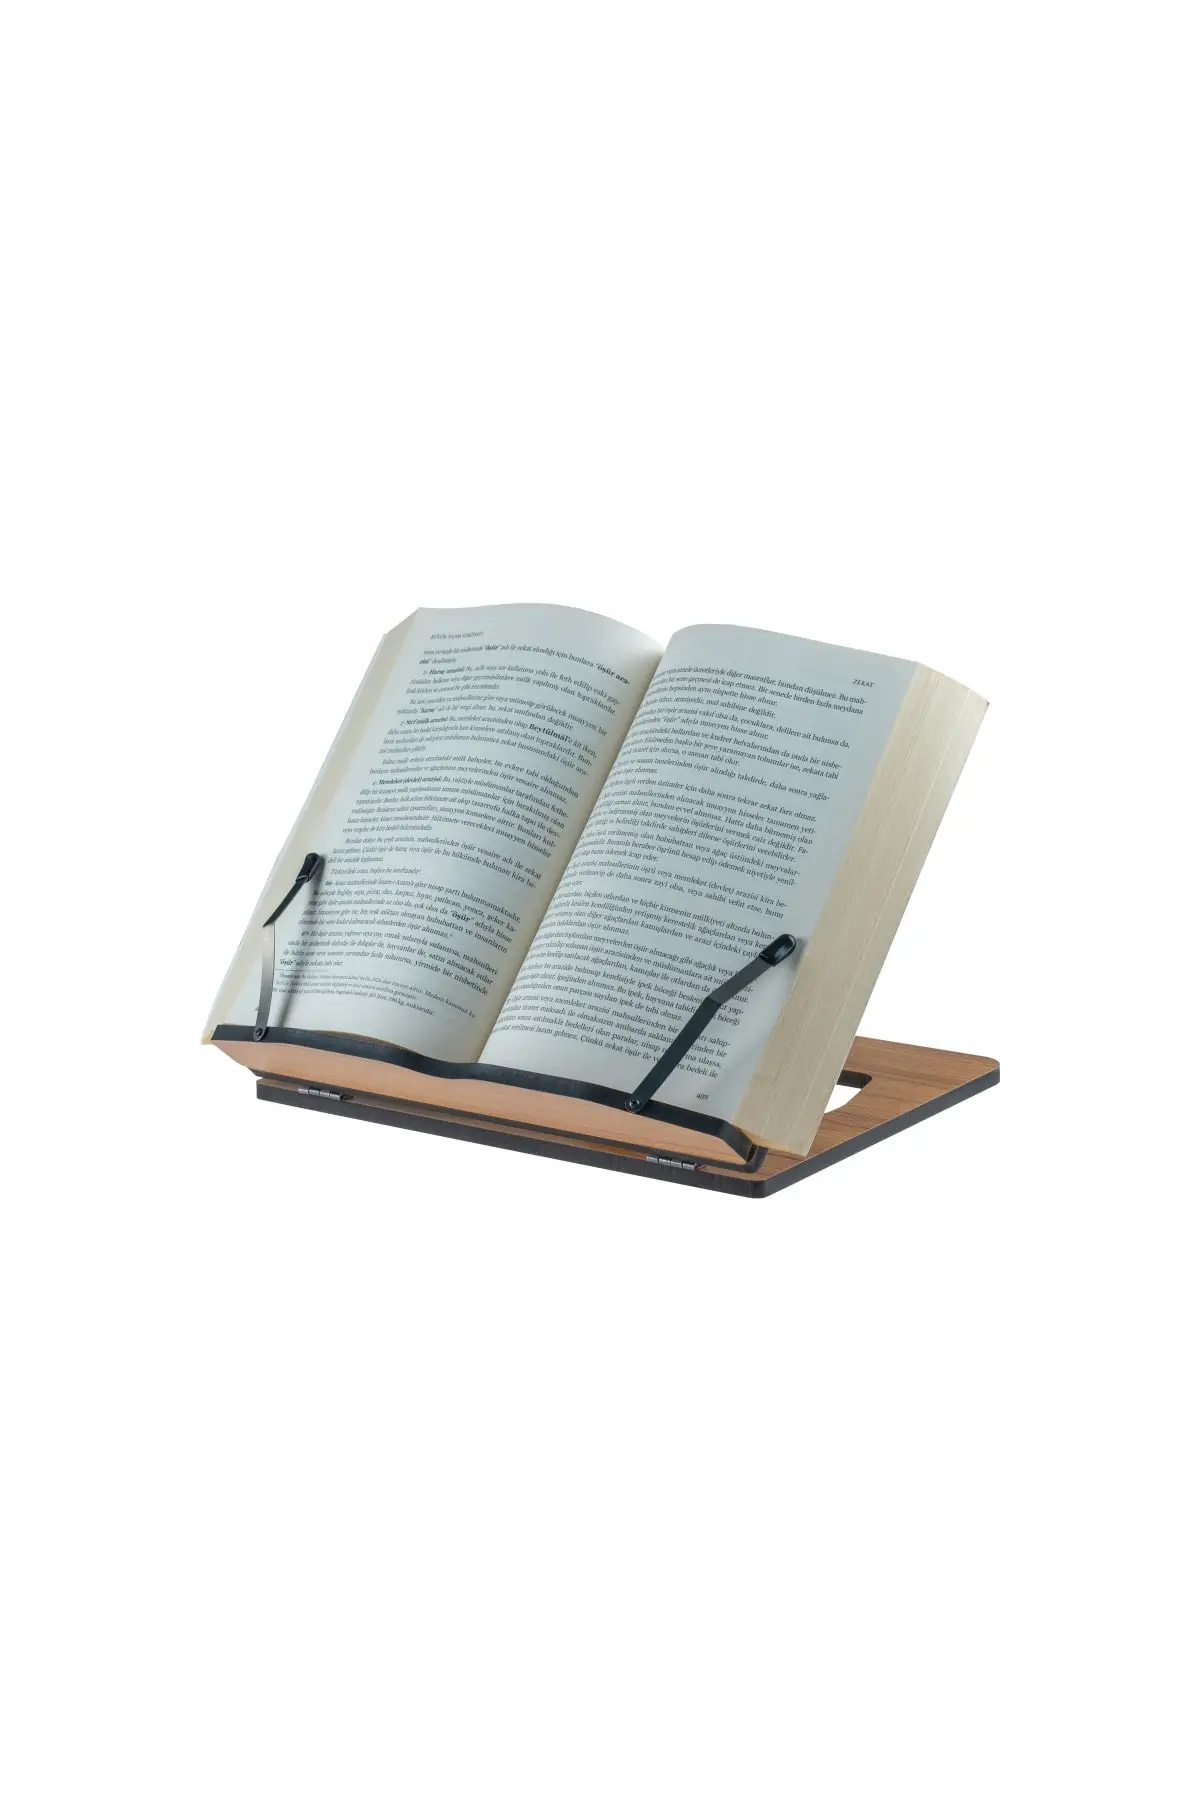 

Vigo Wood Ahşap Kitap Okuma Ve Tablet Standı